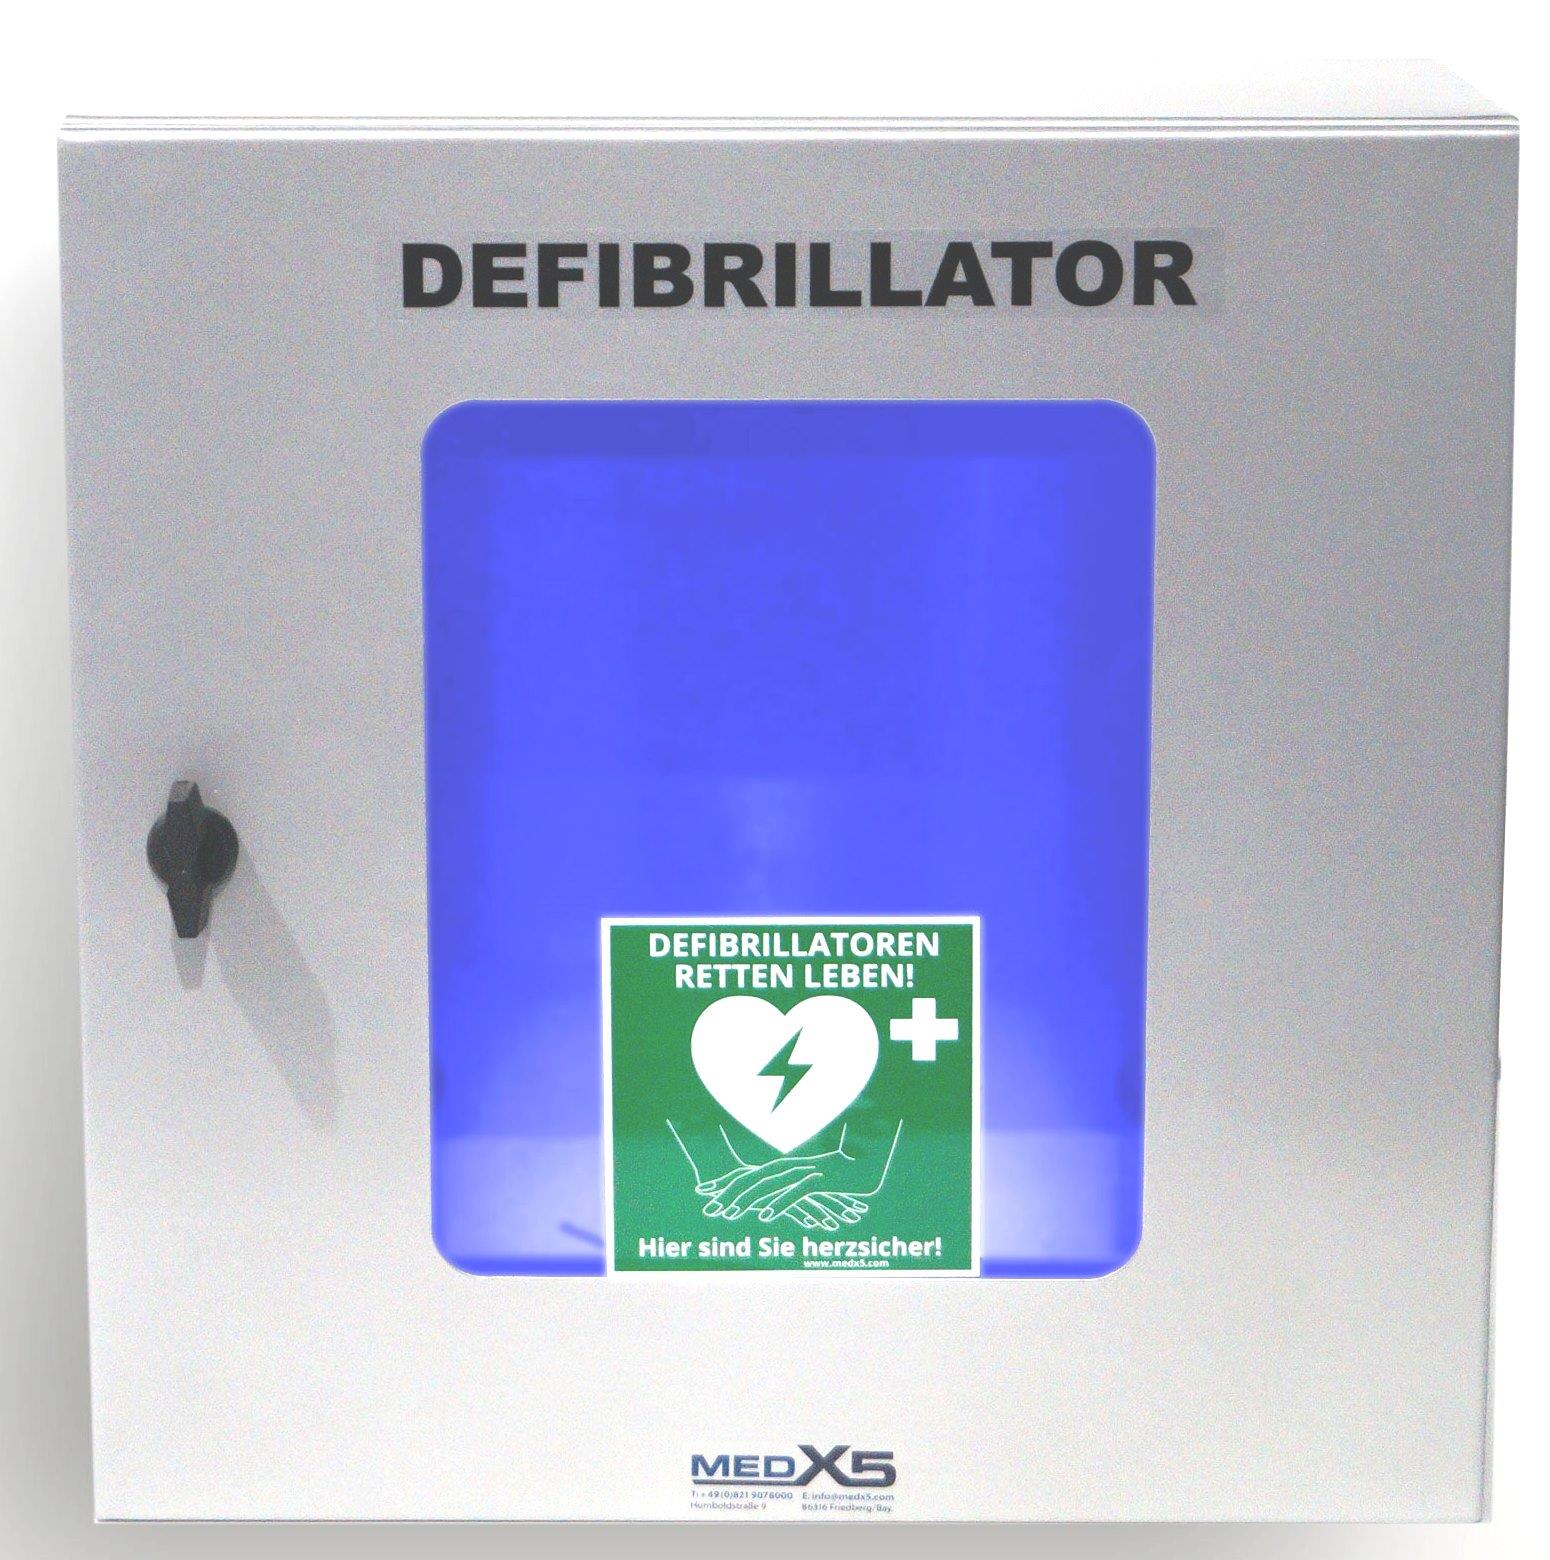 Defibrillator AED Außen-Wandkasten klimatisiert, mit Alarmen, beleuchtet, Universalgröße, S